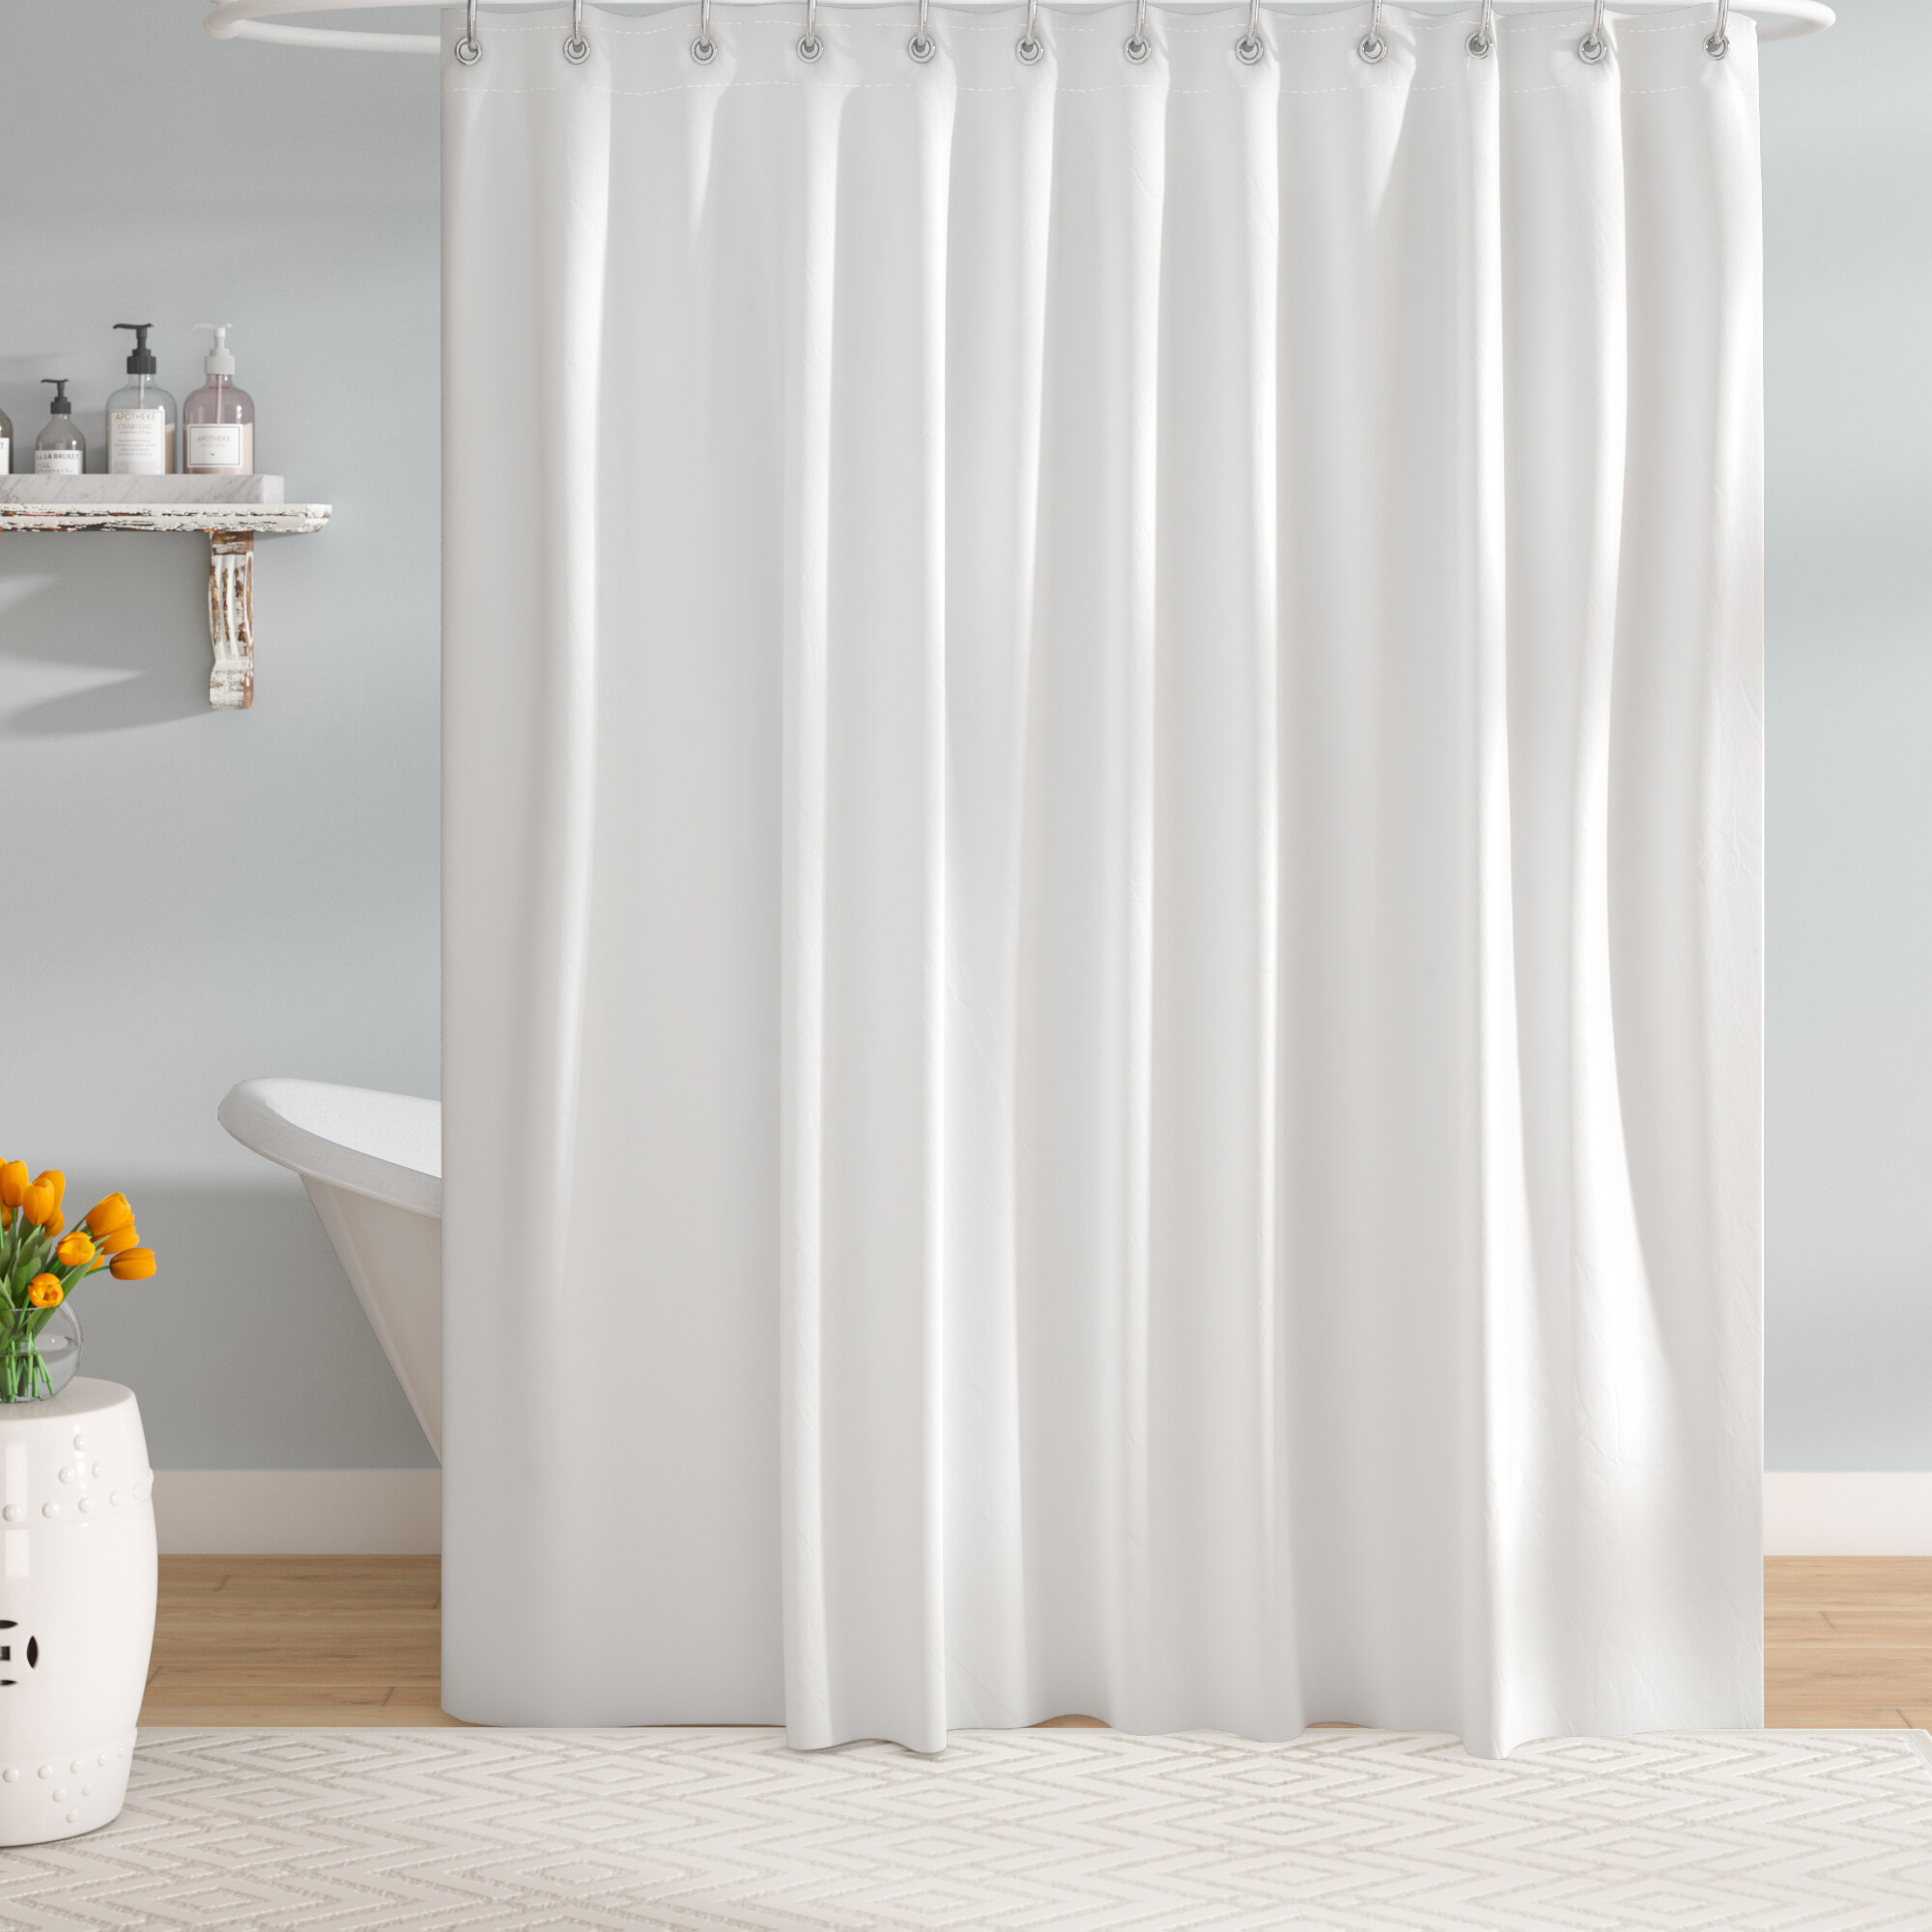 Scribble Waterproof Bathroom Polyester Shower Curtain Liner Water Resistant 